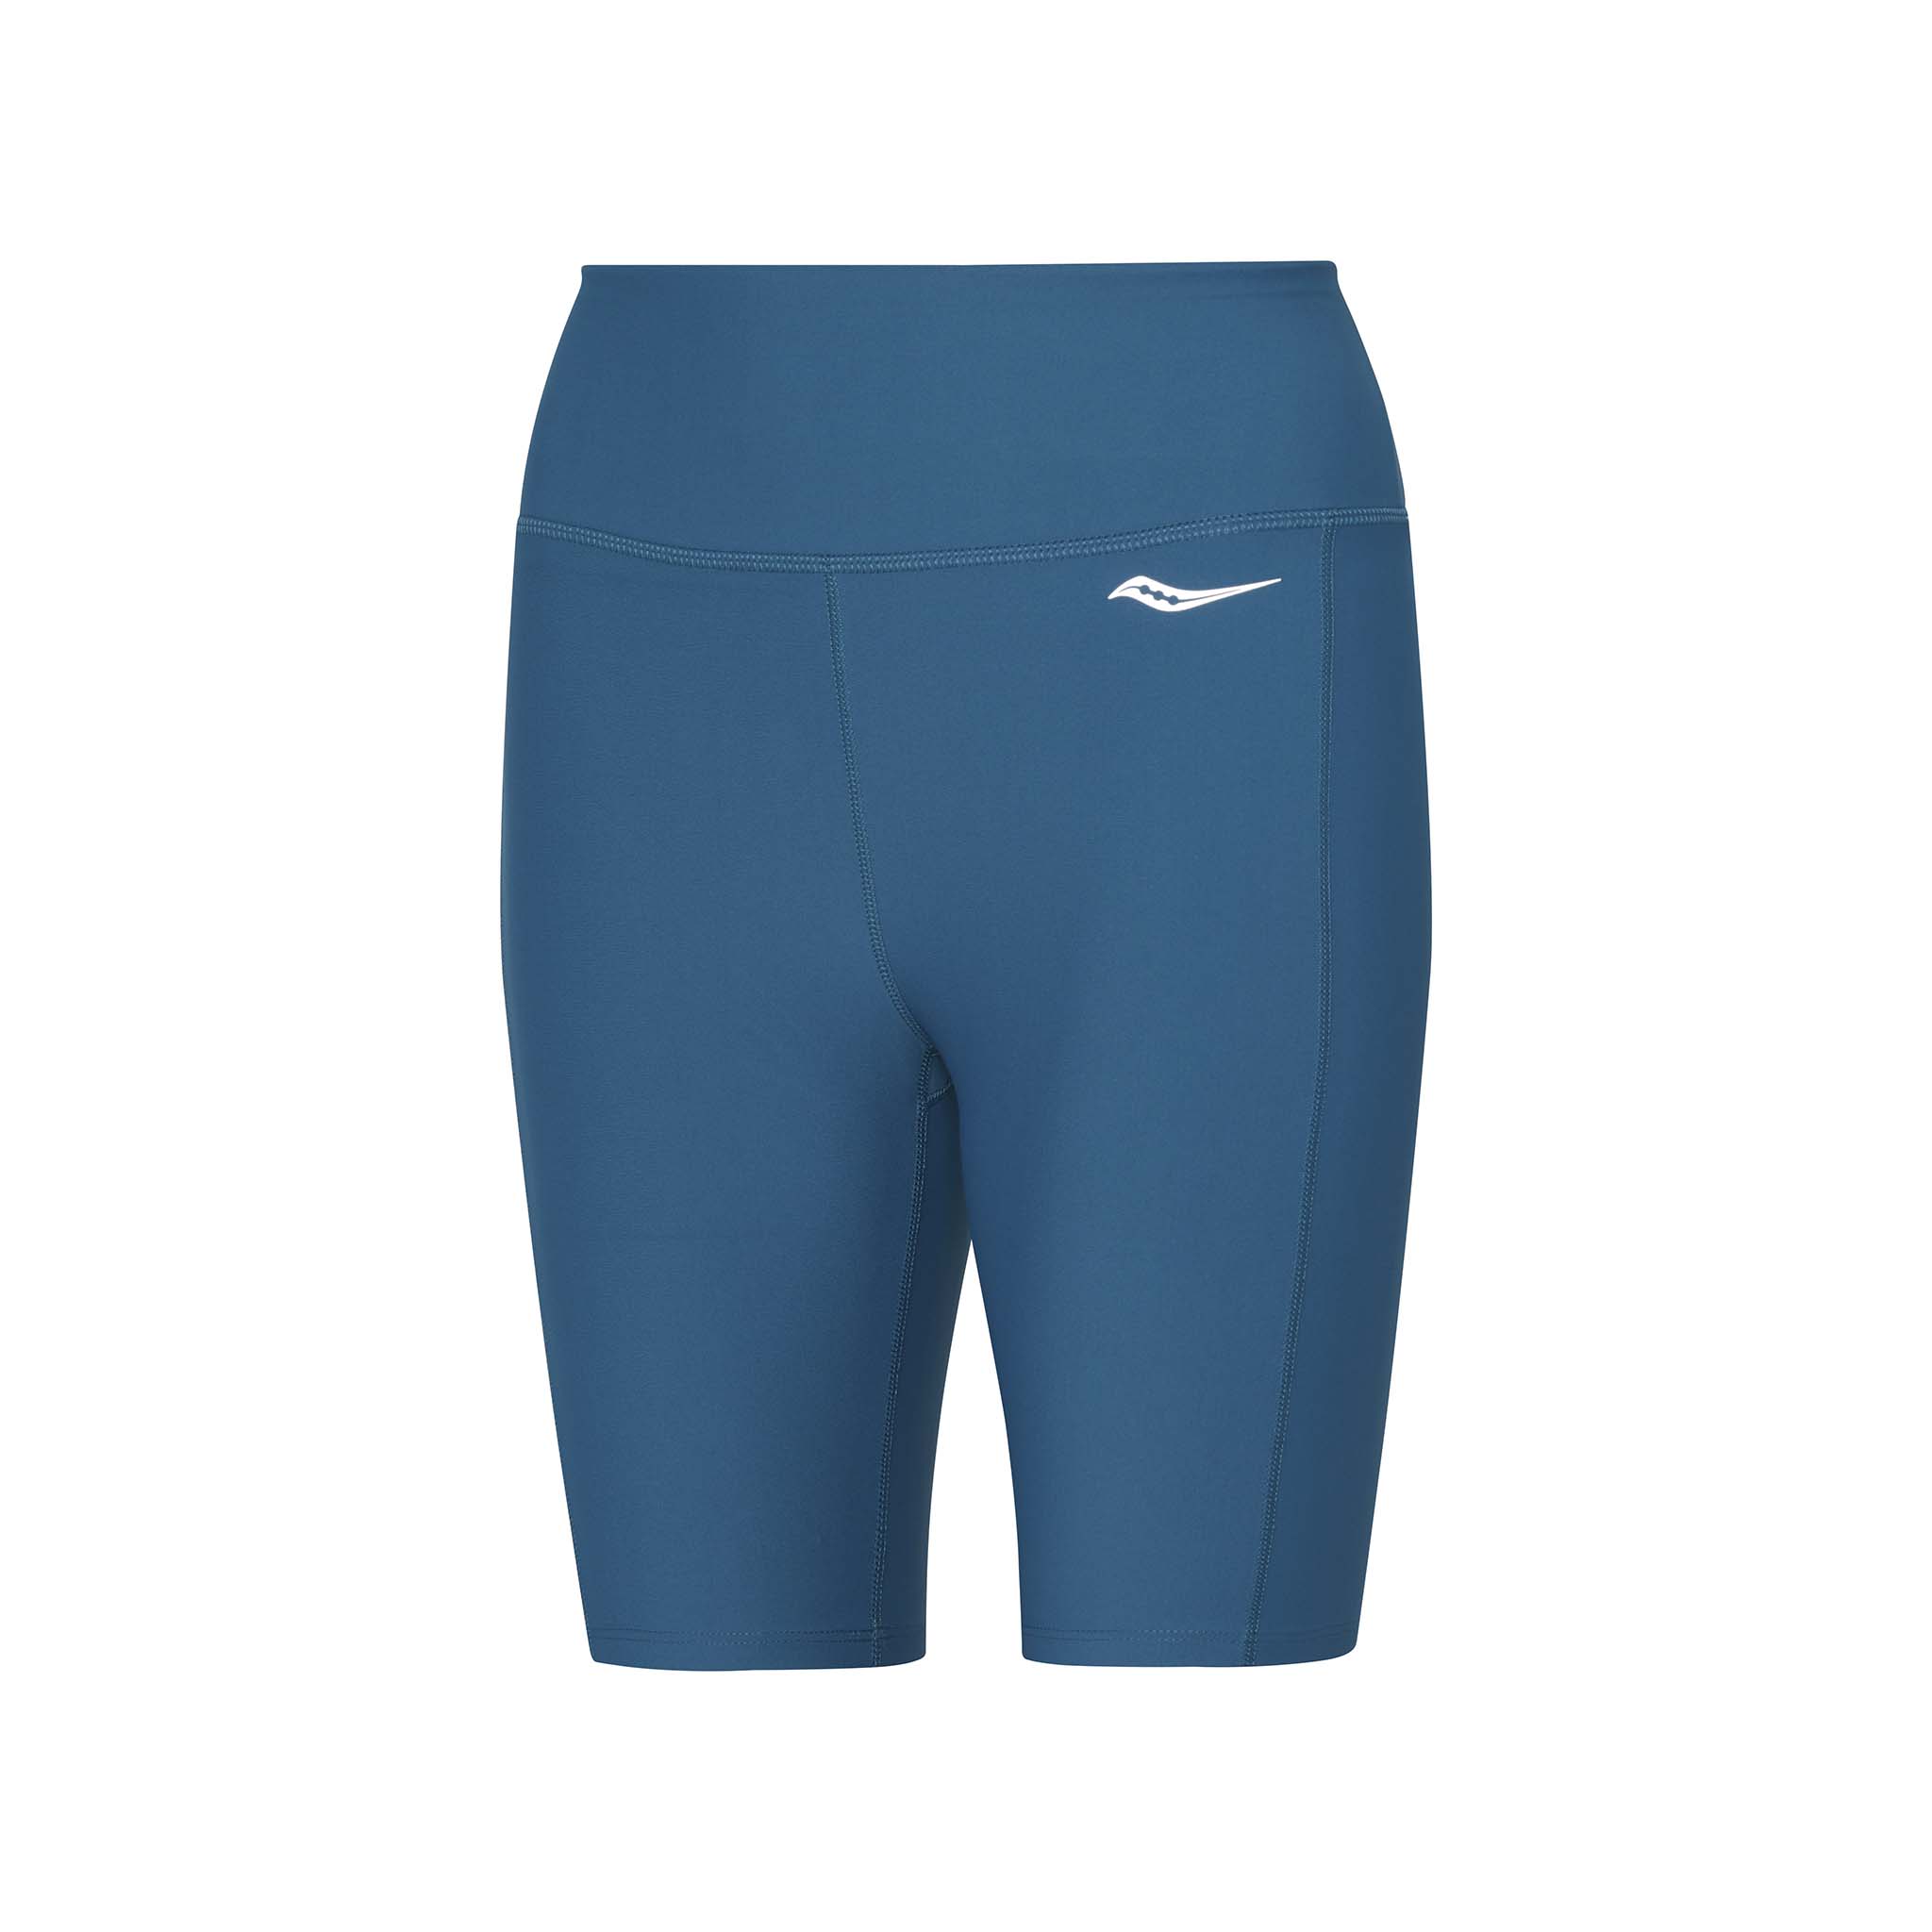 Saucony Fortify Tight running leggings for women – Soccer Sport Fitness